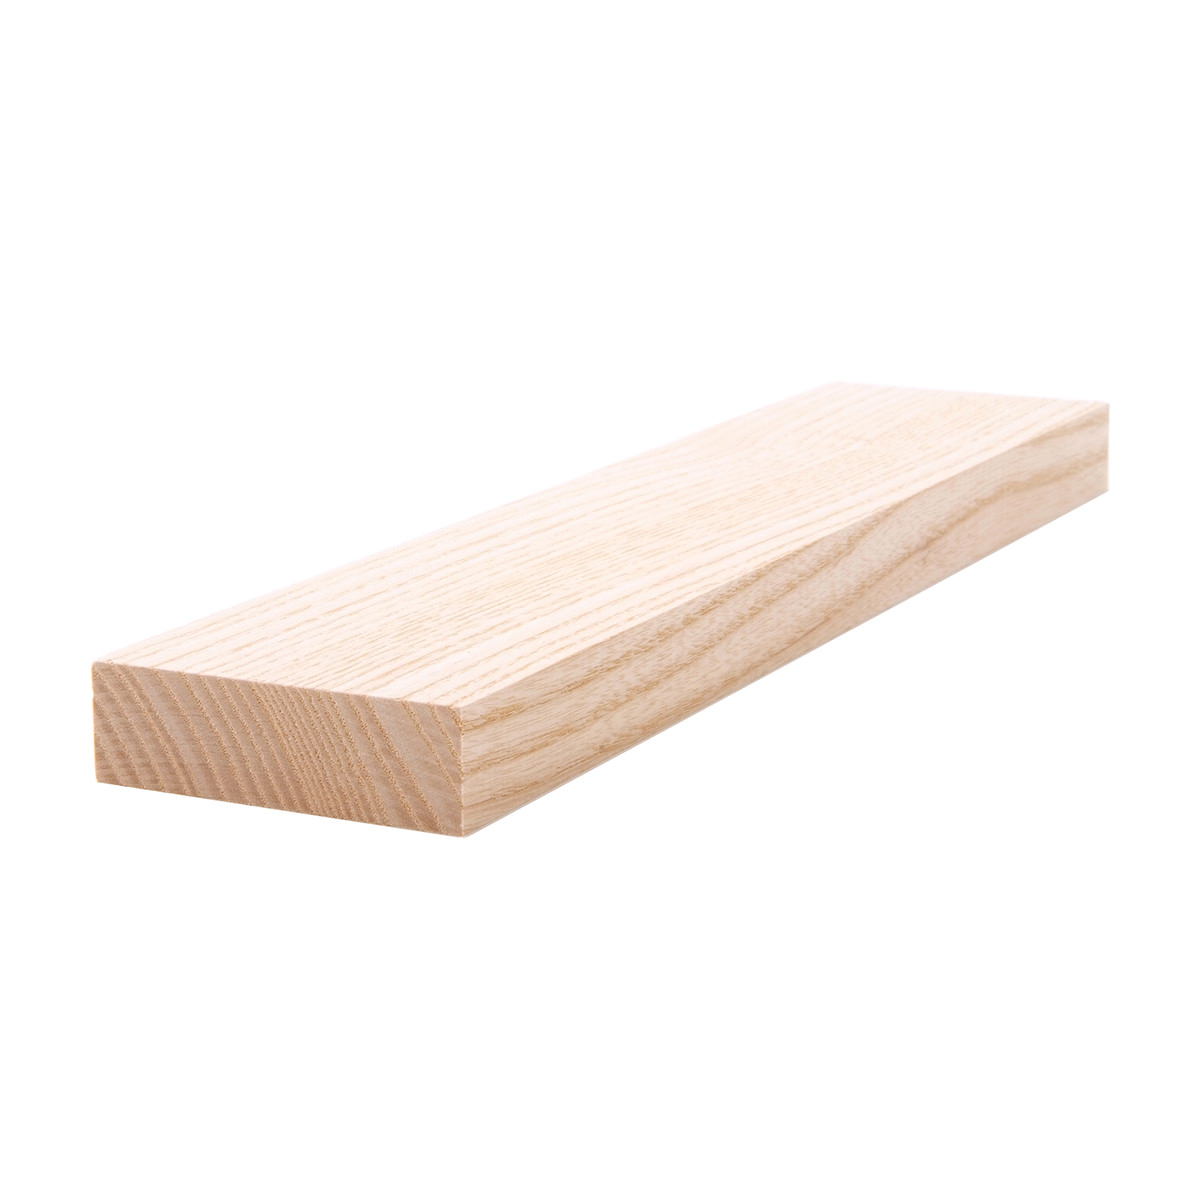 1 X 3 Premium Pine Board